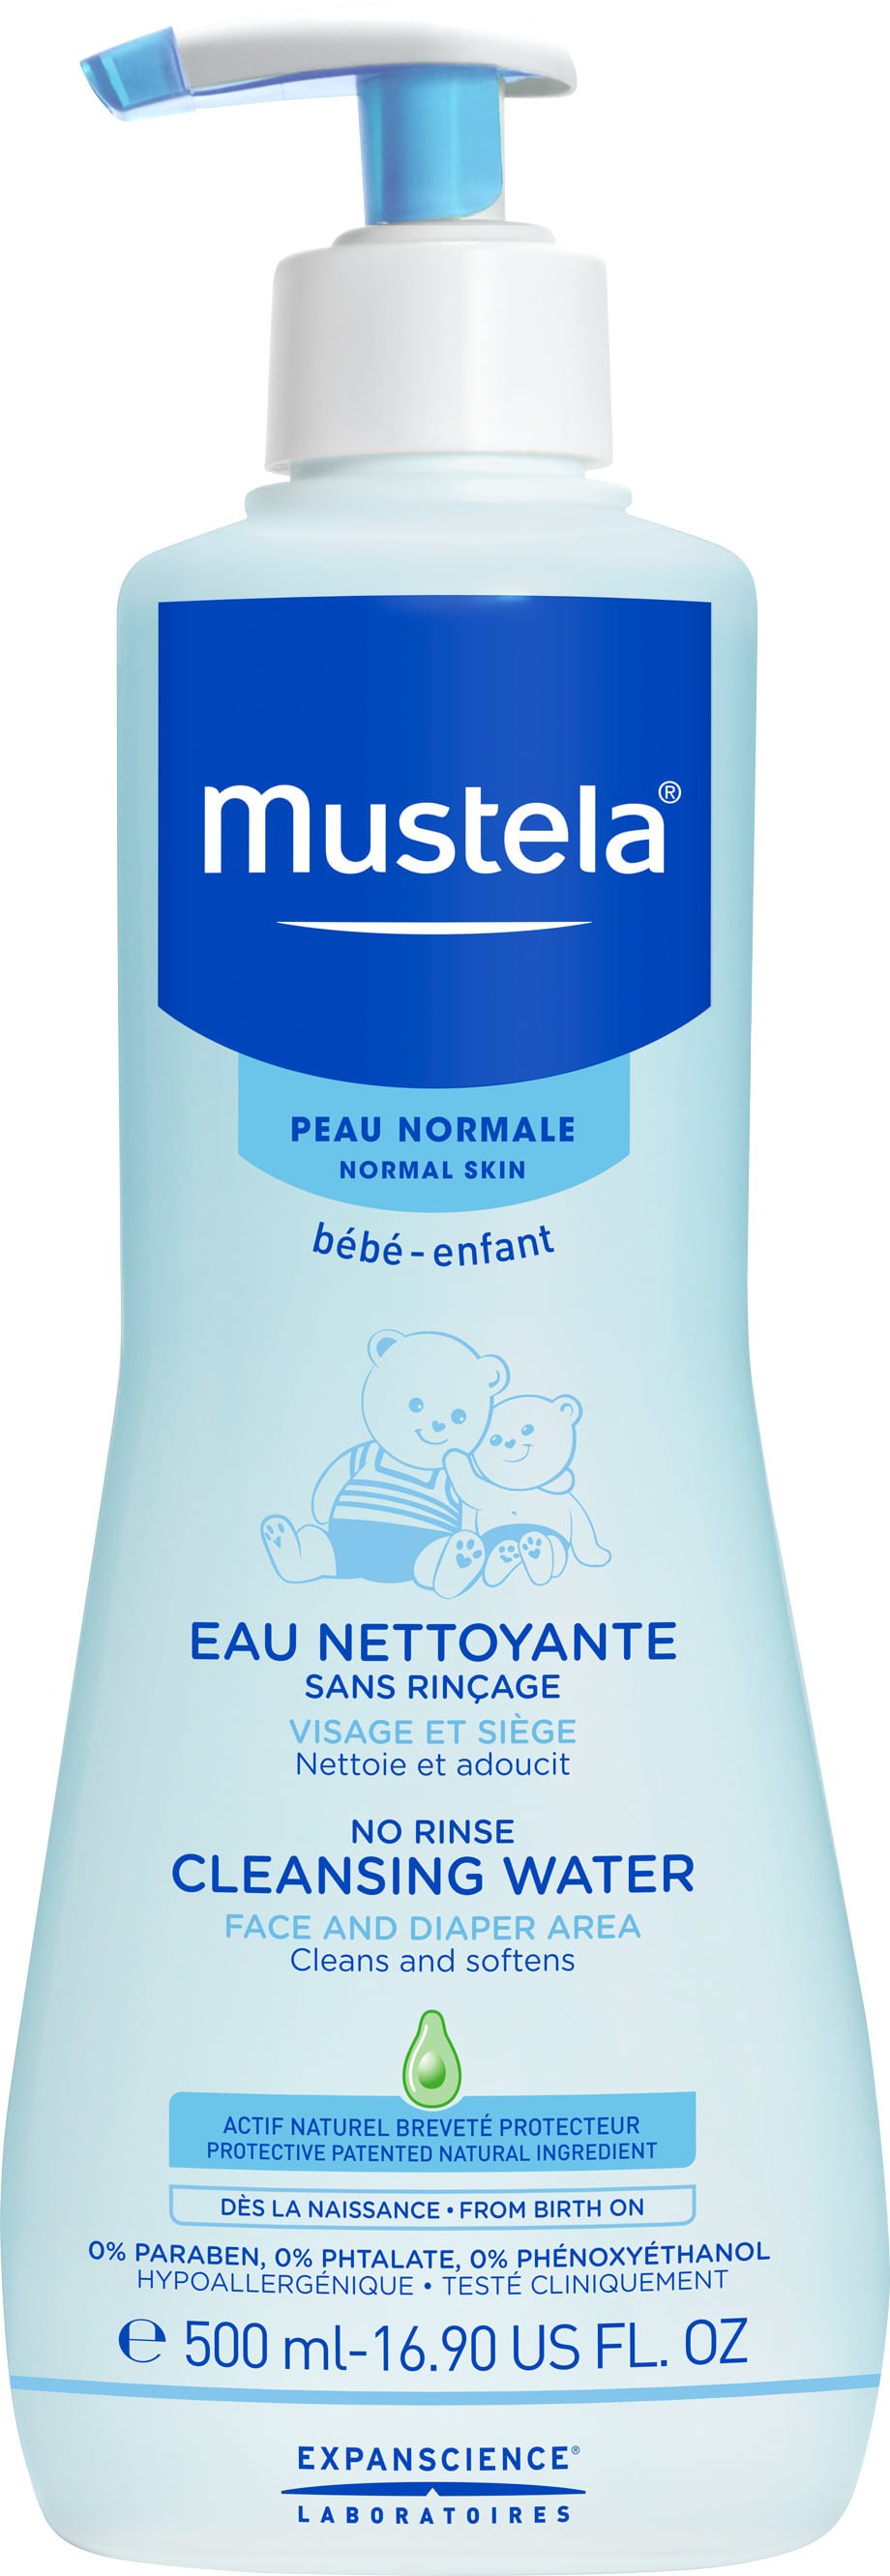 mustela baby cleansing water